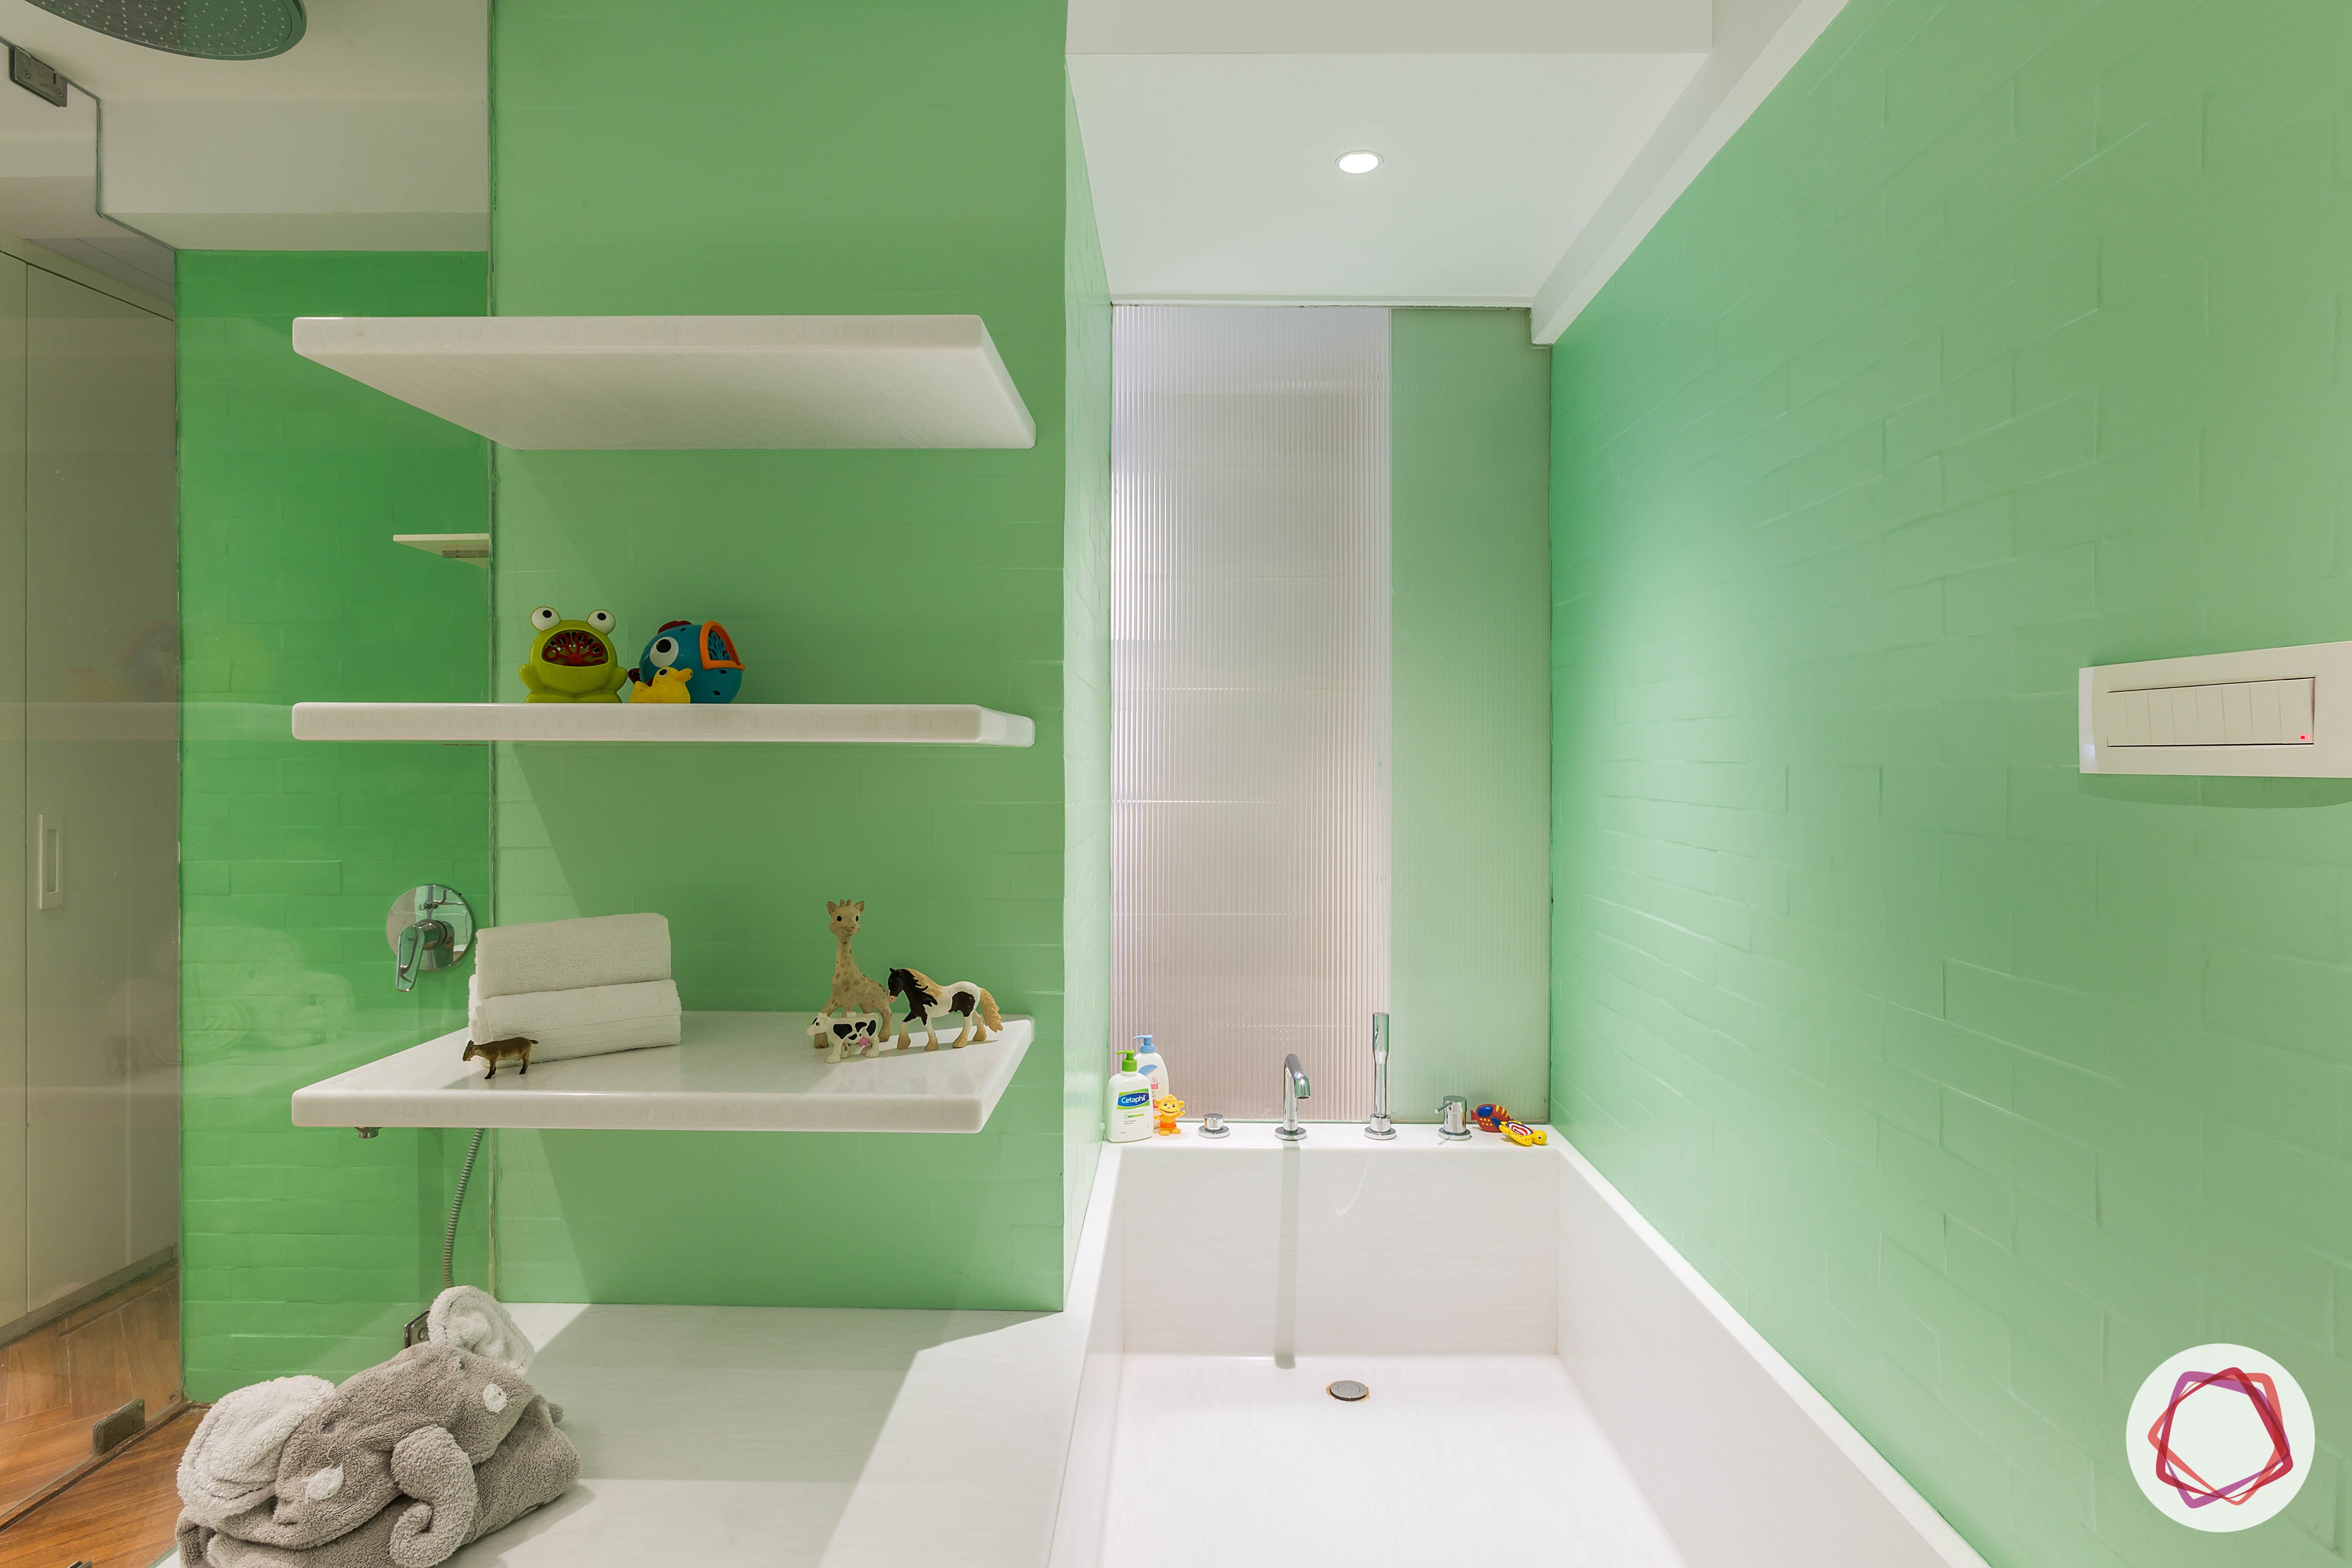 4bhk house plan-kids bathroom designs-white-tub-shelves